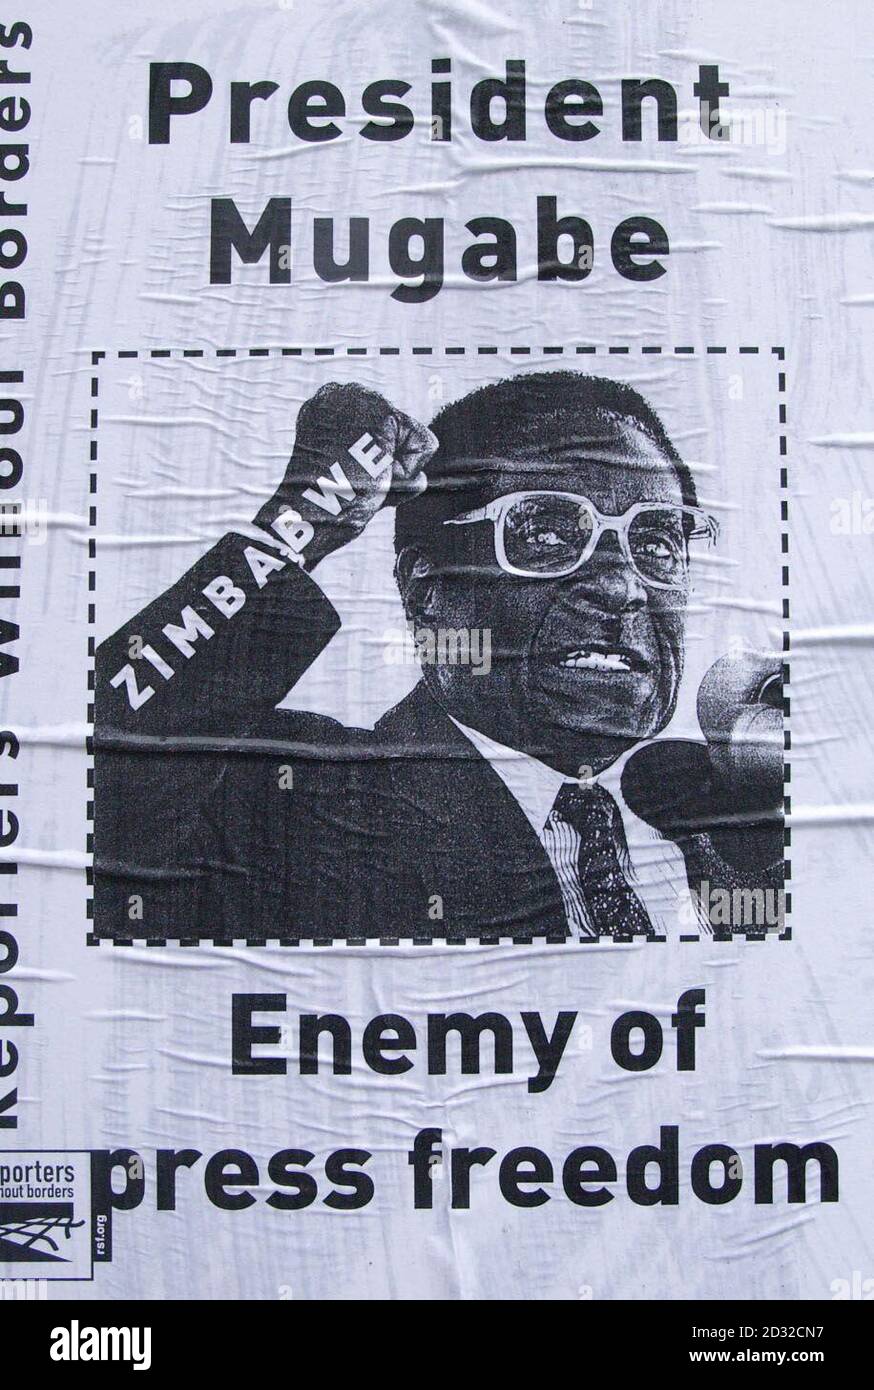 Une affiche du président zimbabwéen, le président Mugabe, que les manifestants ont apprise sur les fenêtres de la Maison du Zimbabwe dans le centre de Londres, dans une protestation en faveur de la liberté de la presse au Zimbabwe. * UN groupe d'environ 10 manifestants de Reporters sans frontières se sont rassemblés le jour du 78e anniversaire du président du Zimbabwe Mugabe pour poster à bord de la Maison du Zimbabwe en signe de protestation contre le manque de liberté de la presse pour les élections à venir au Zimbabwe. Banque D'Images